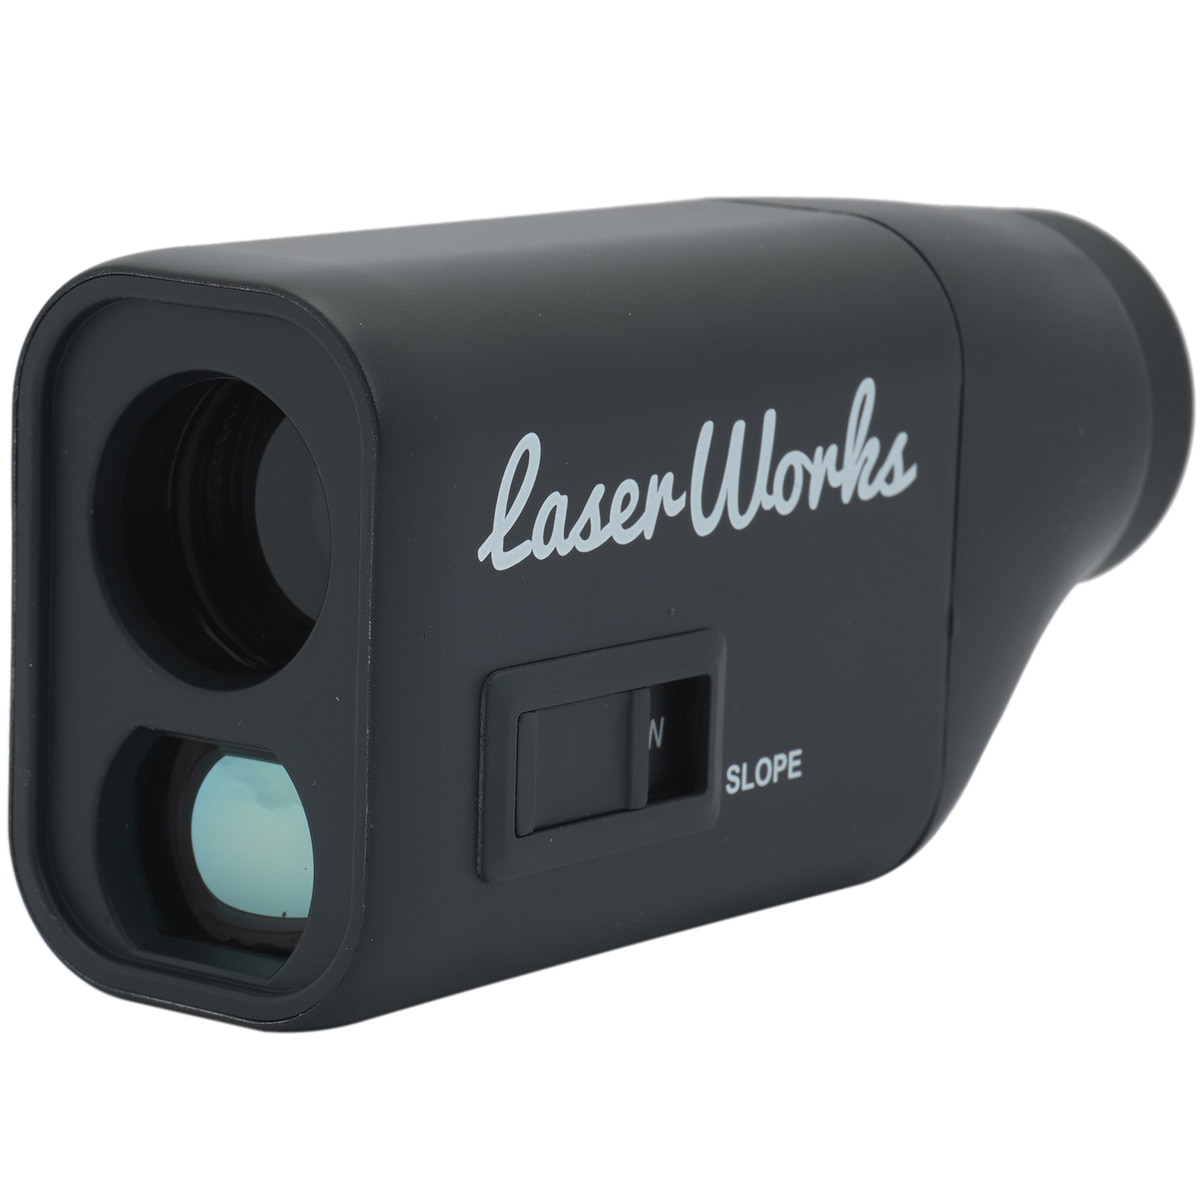 コンパクト距離測定器(距離測定器)|Laser Works(レーザー